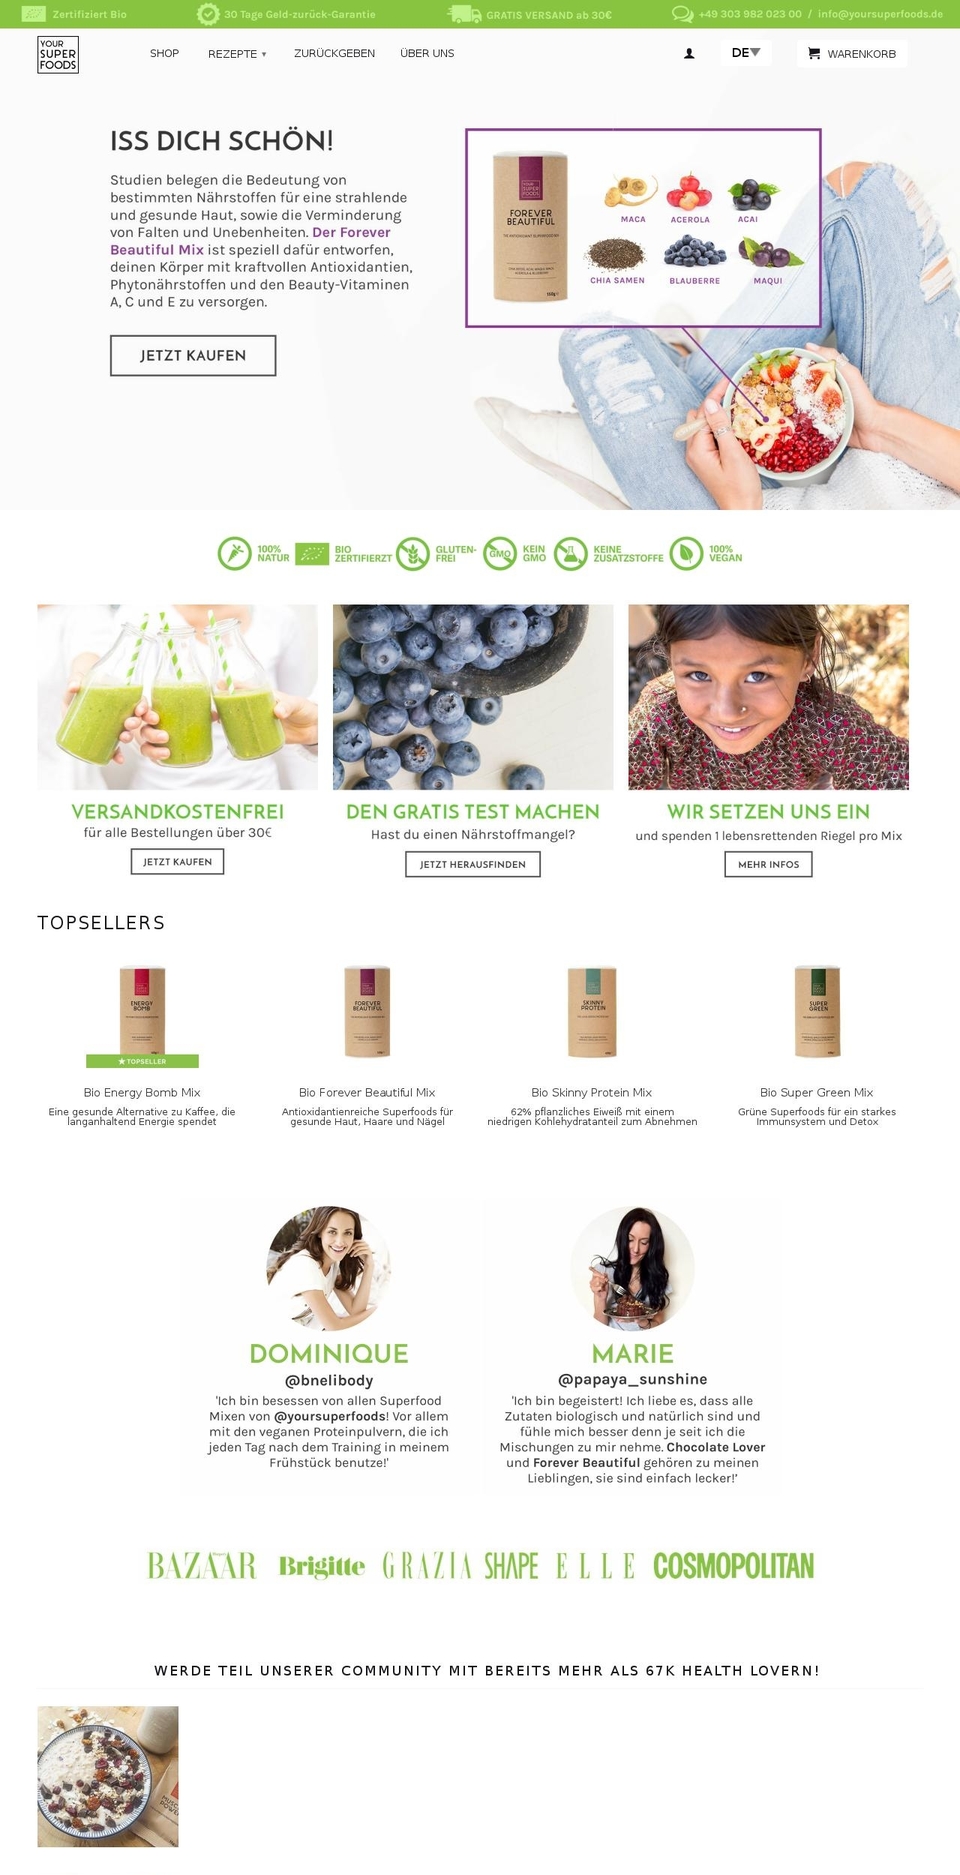 yoursuperfoods.de shopify website screenshot